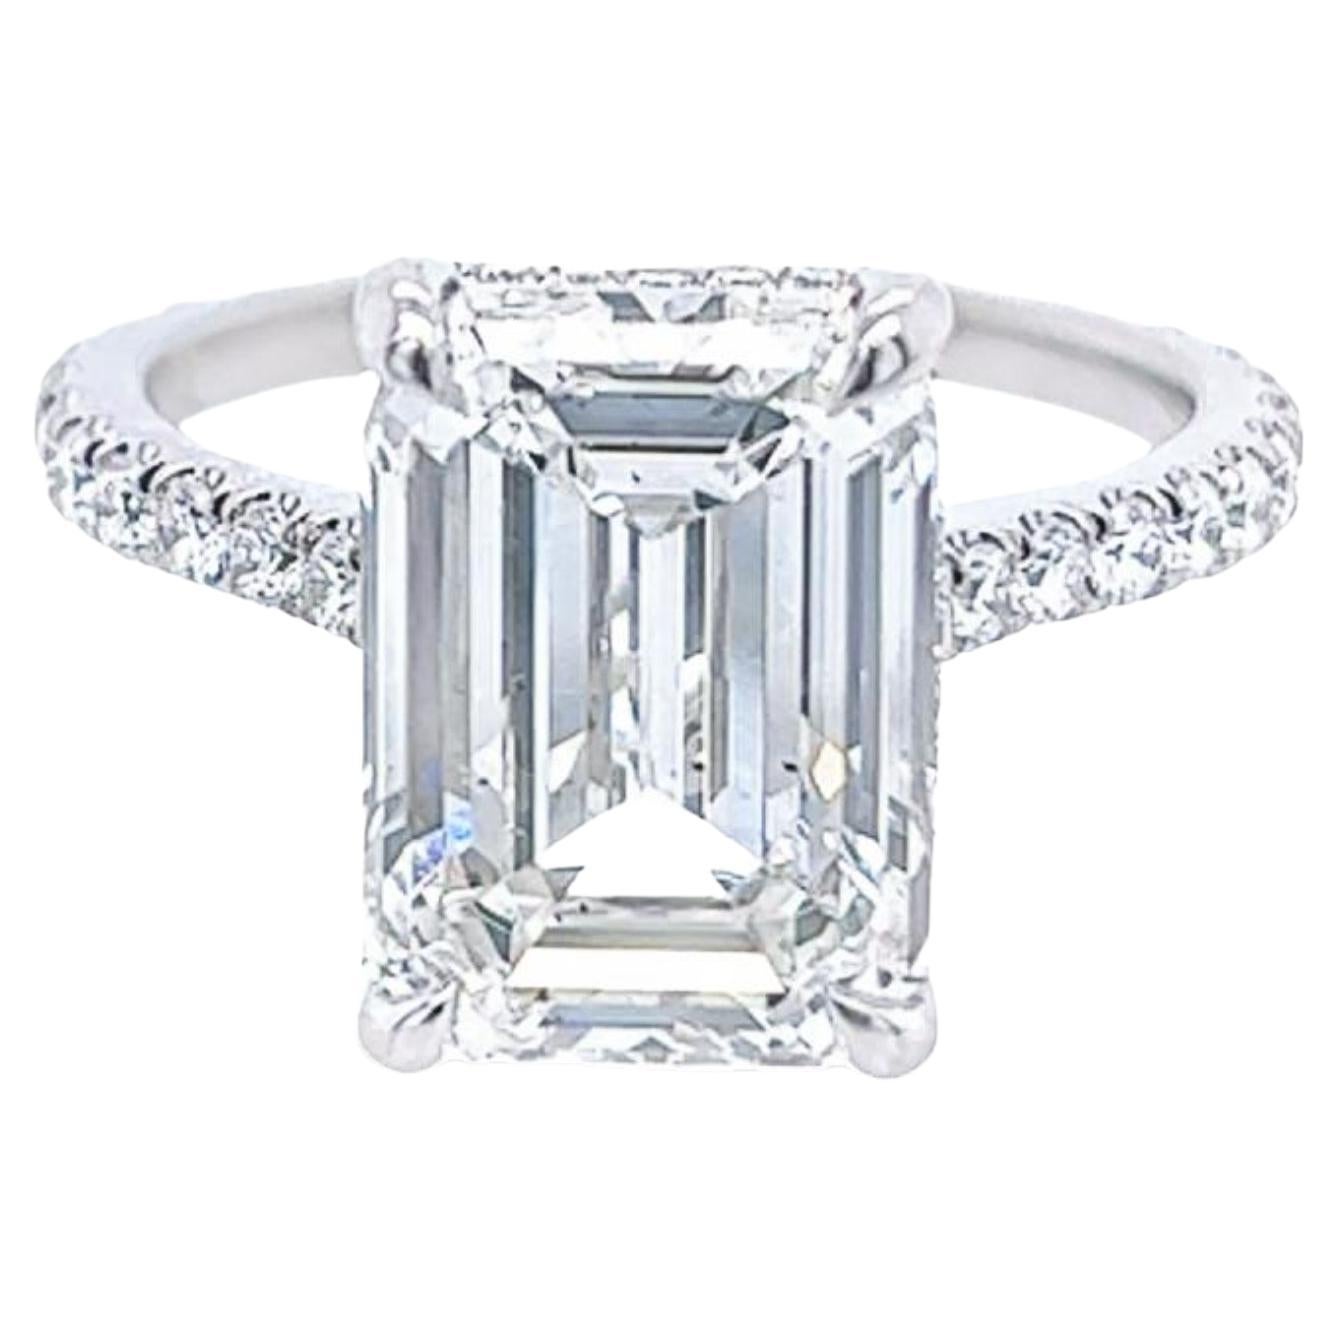 David Rosenberg 5.41 Carat Emerald Cut GIA Diamond Engagement Ring